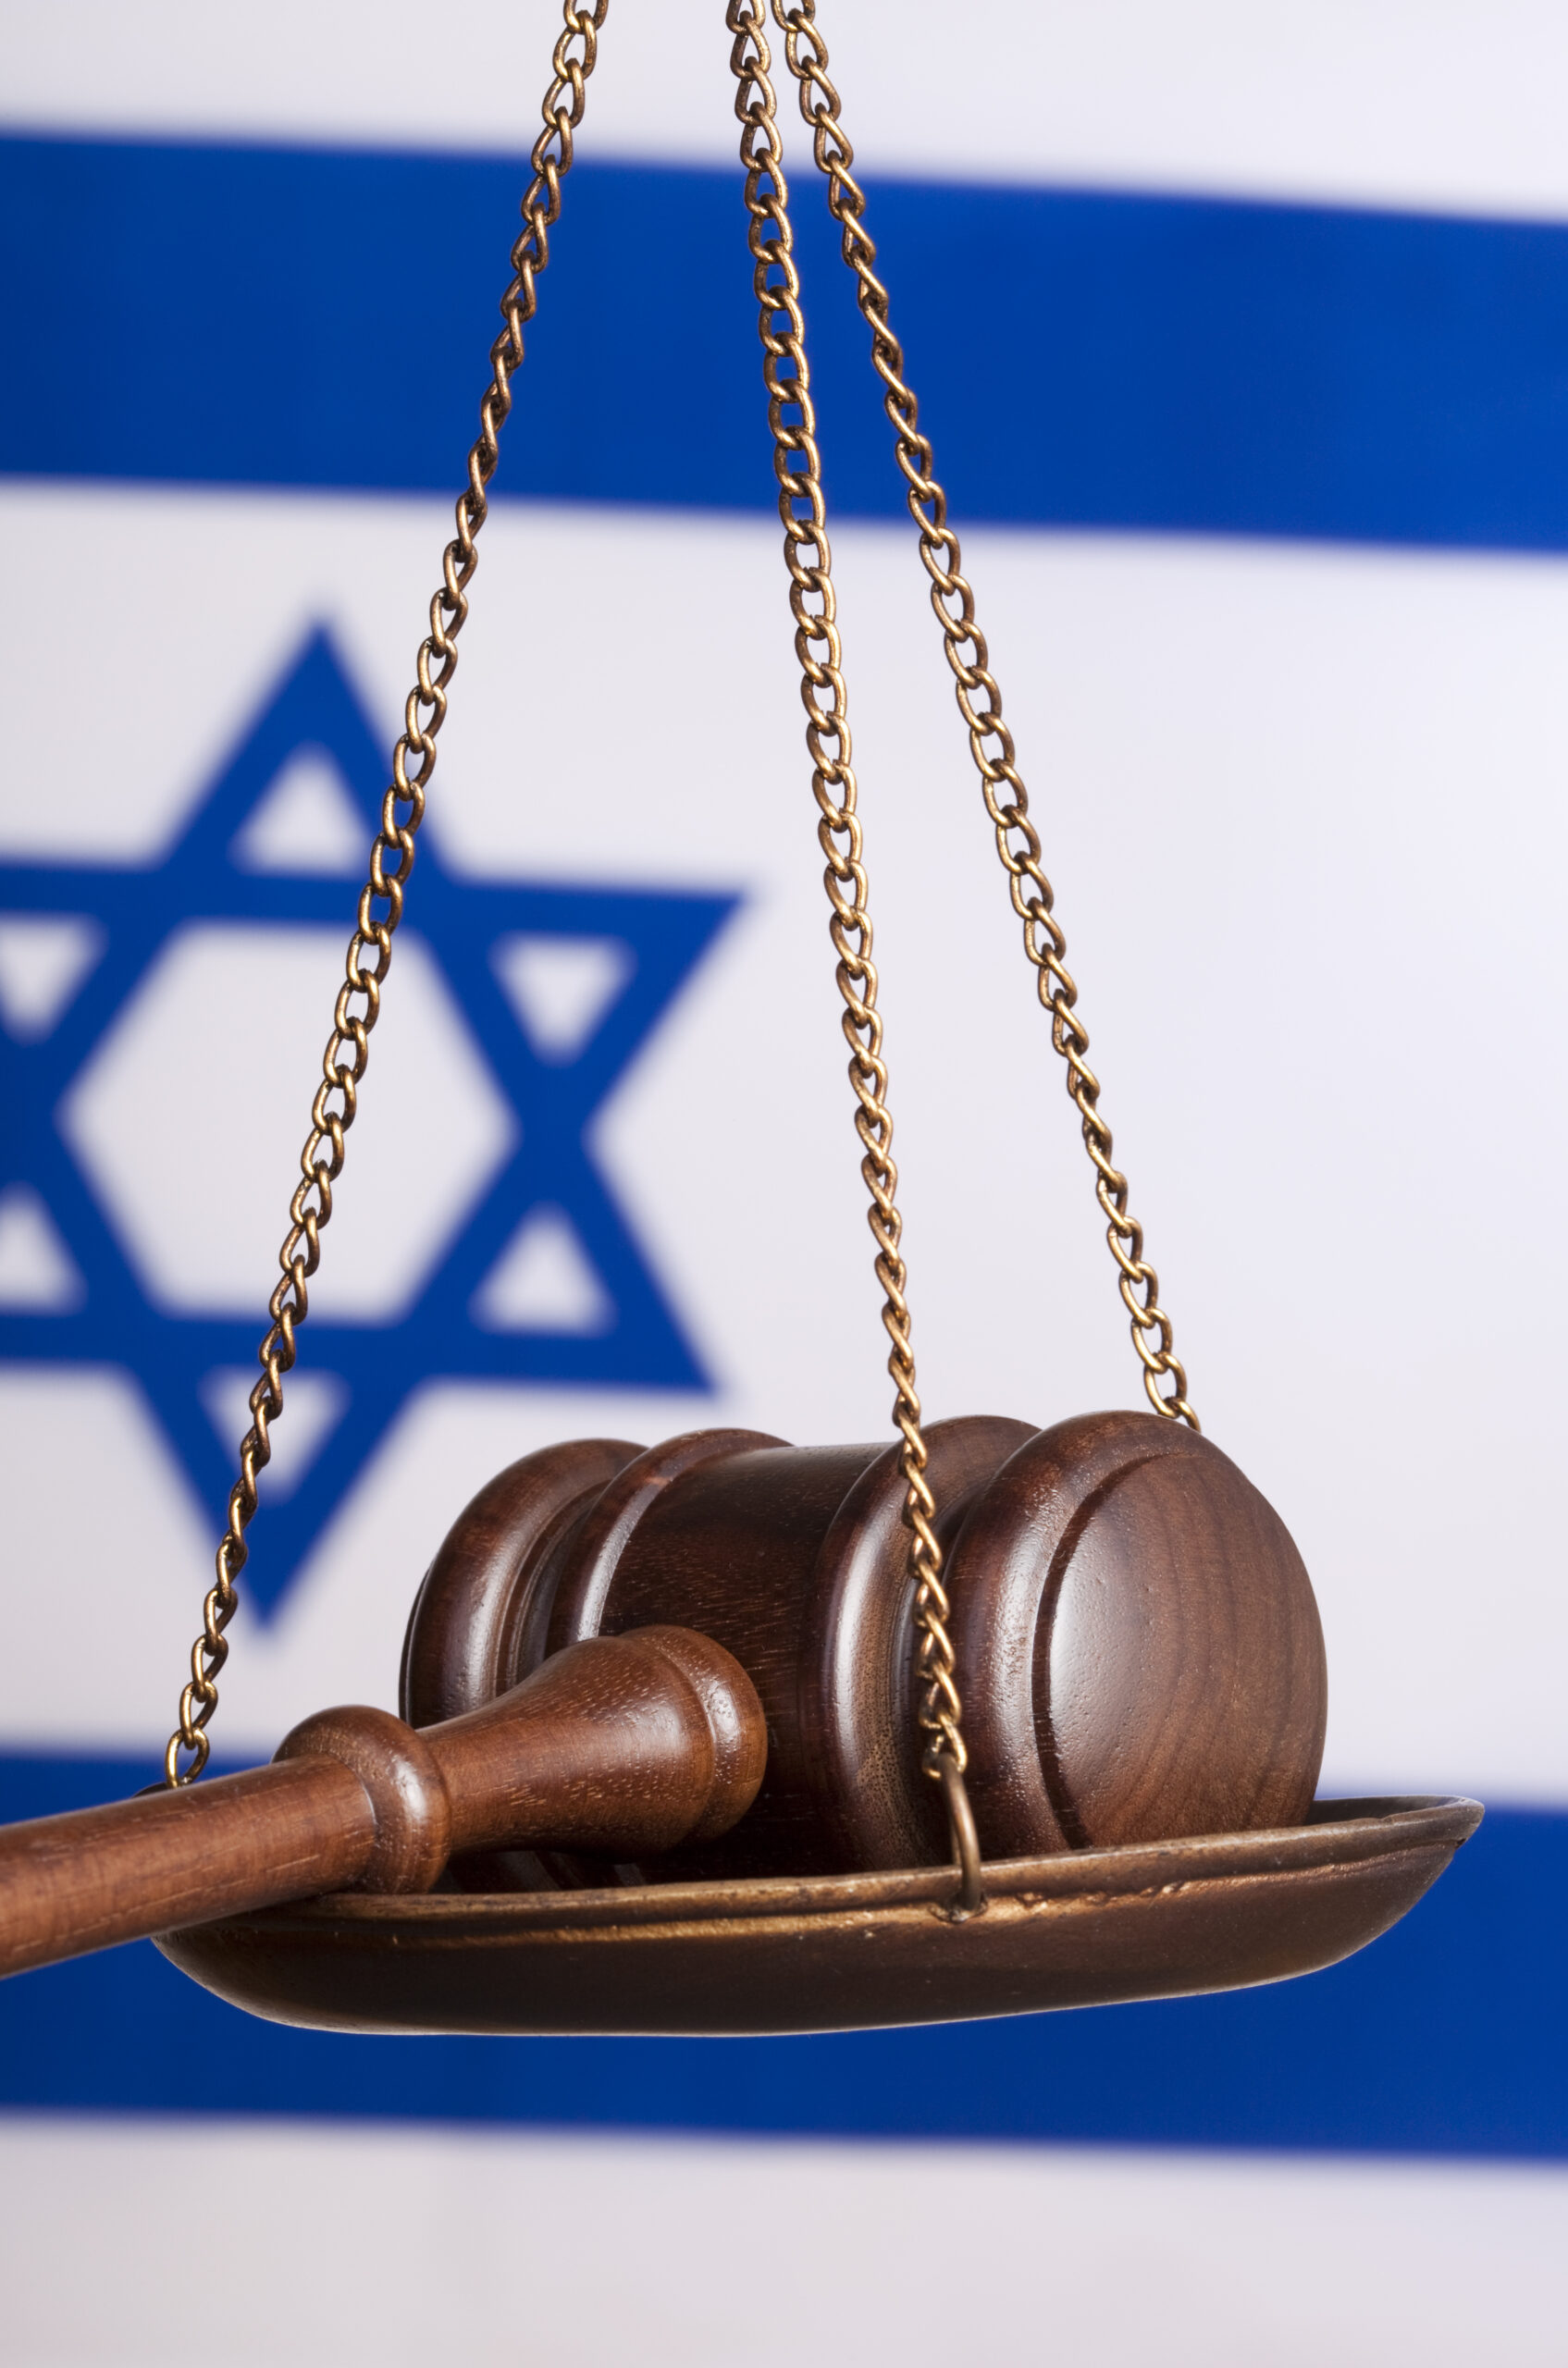 מערכת המשפט בישראל - תמונת אילוסטרציה